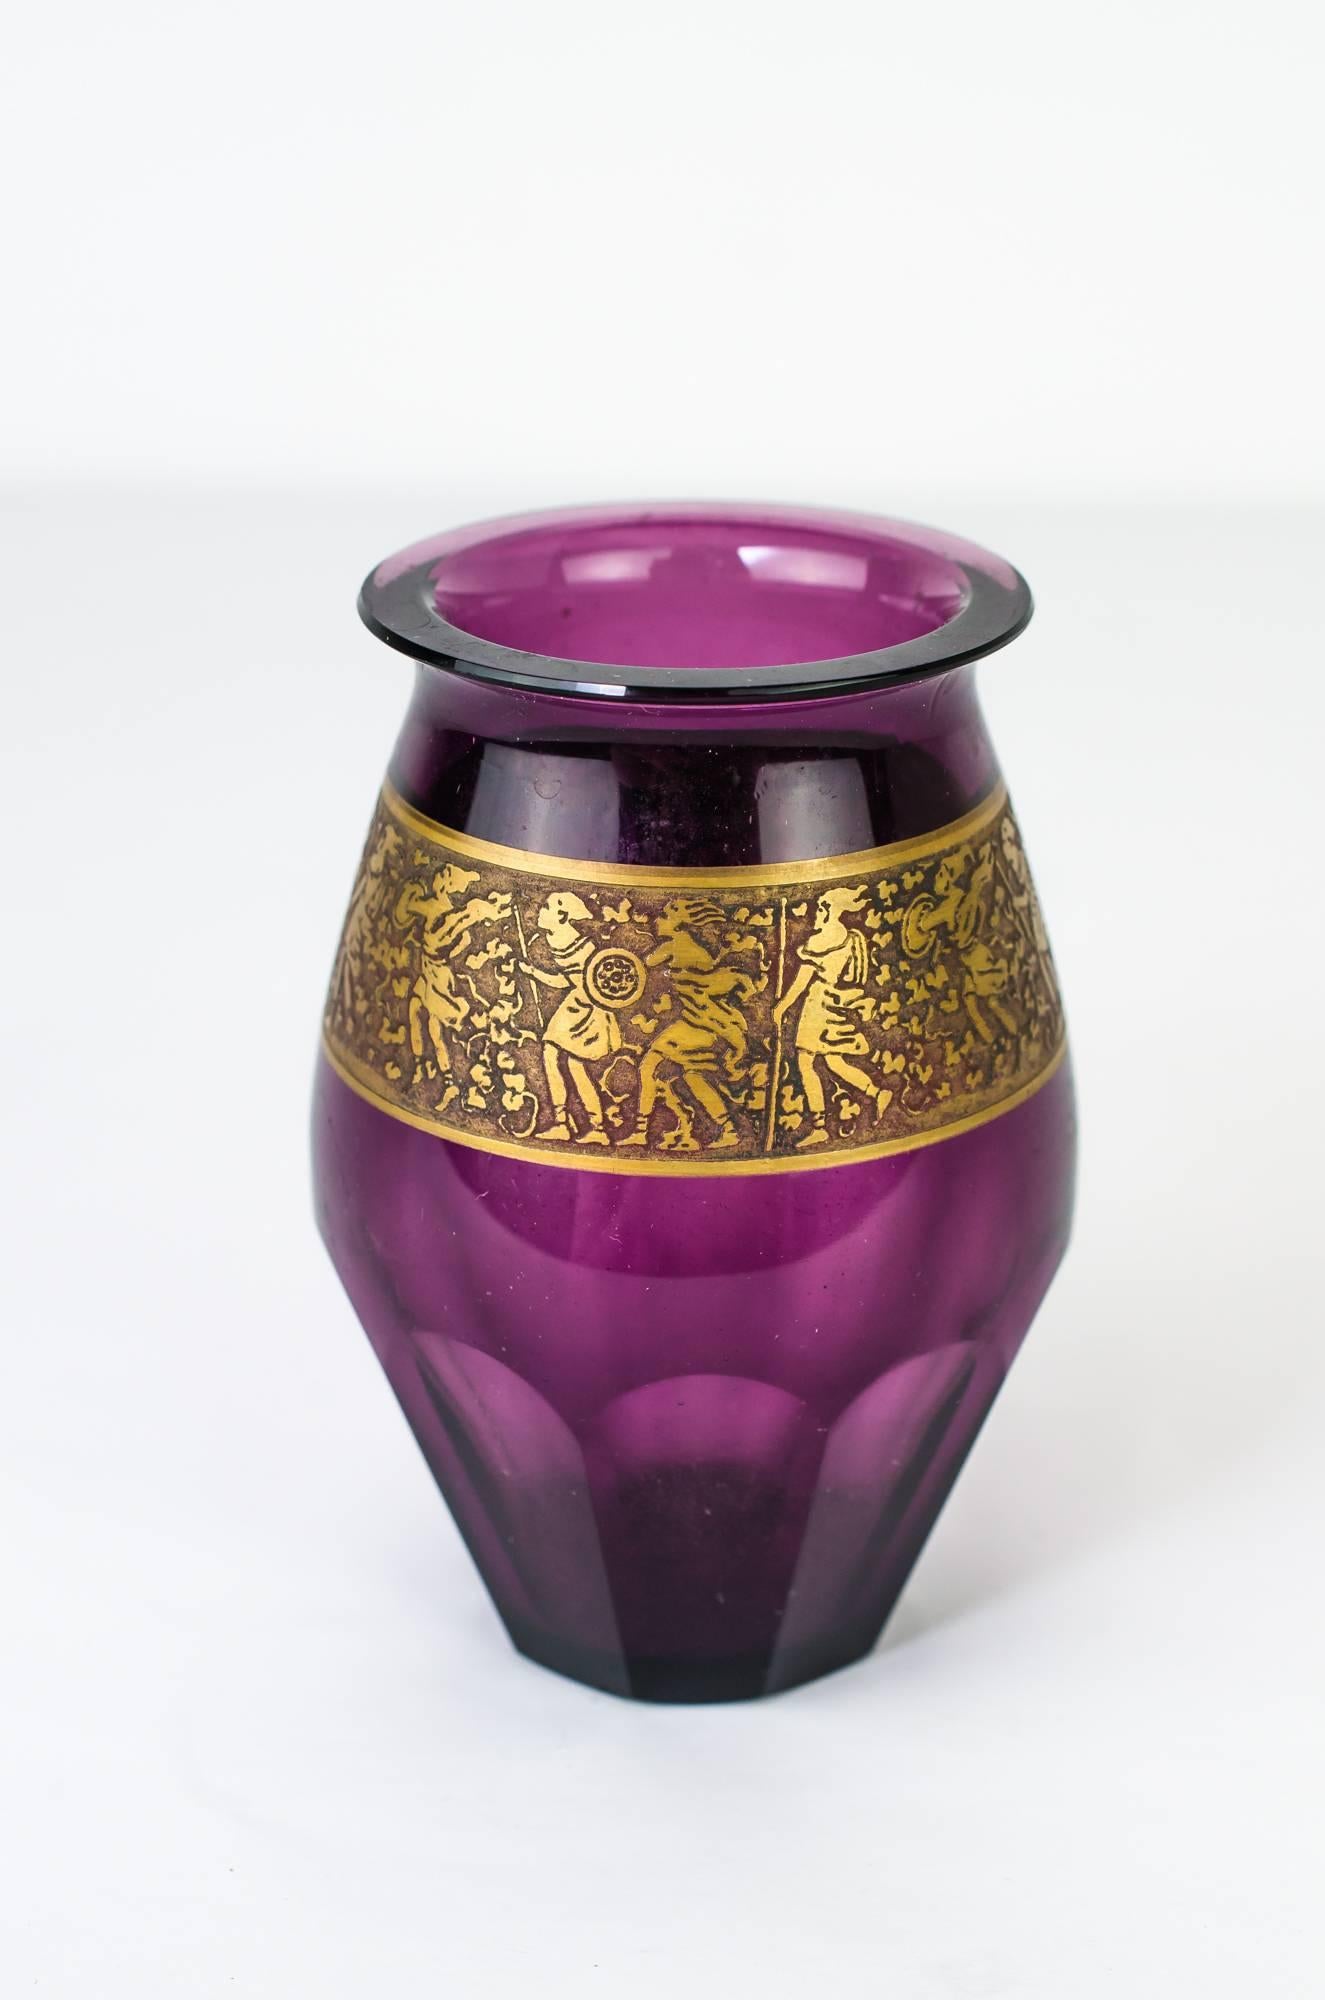 Schöne Vase von Moser Karlsbad
Glas mit Goldrand, hergestellt um 1900 in Karlsbad von der Glashütte Moser.